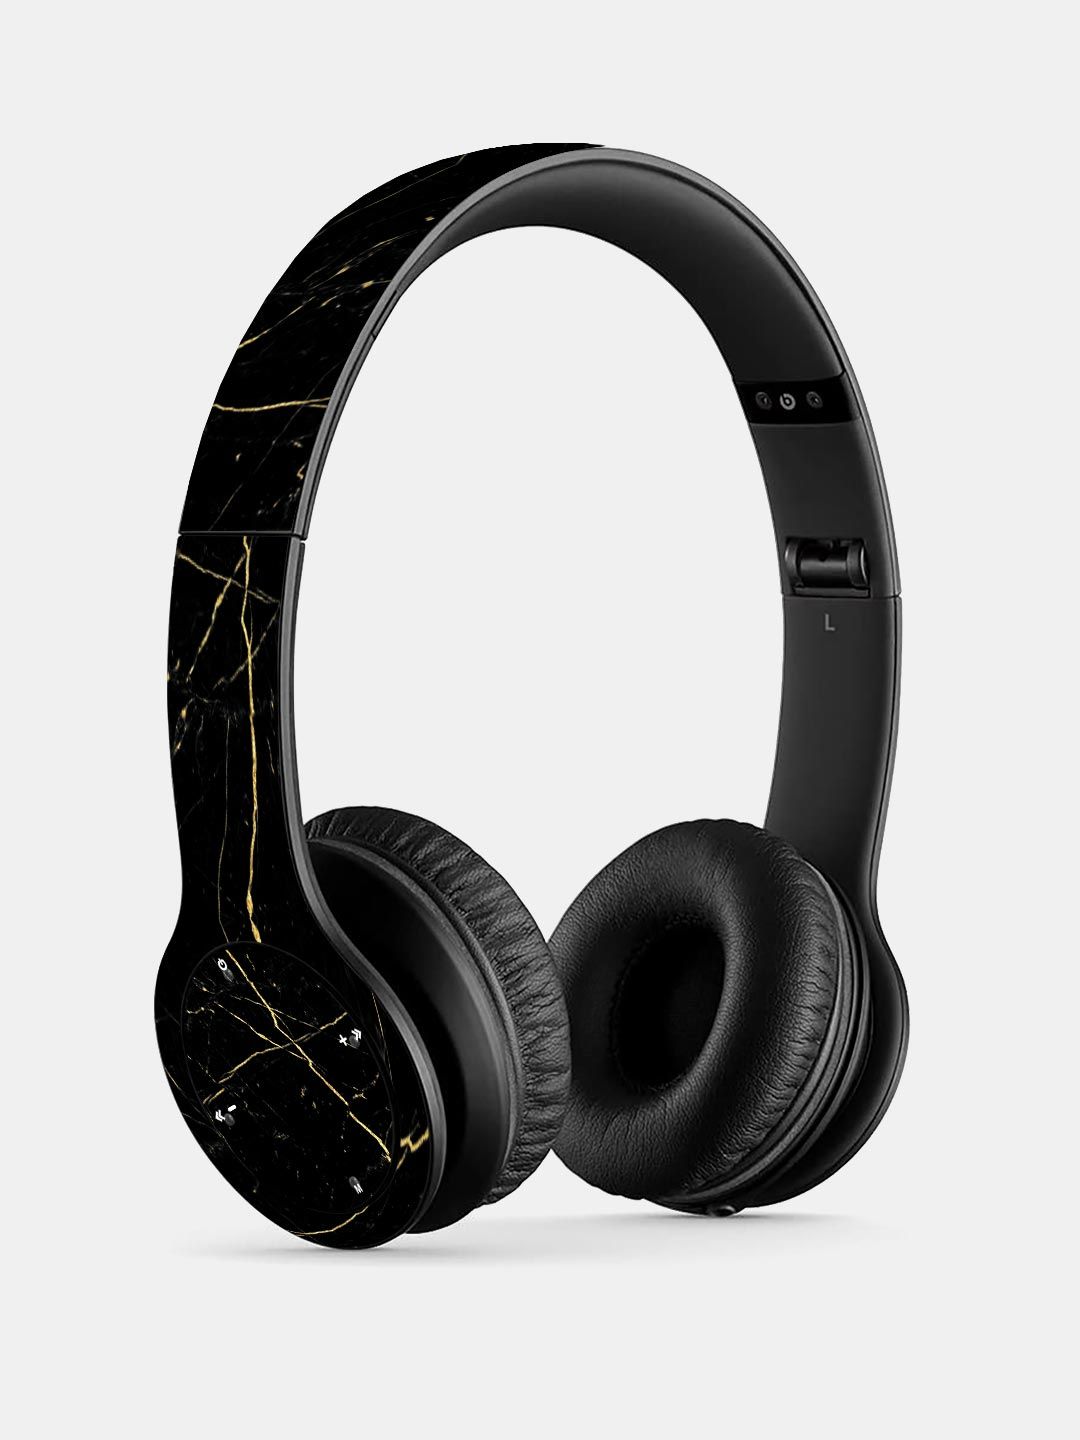 Buy Marble Black Onyx - P47 Wireless On Ear Headphones Headphones Online